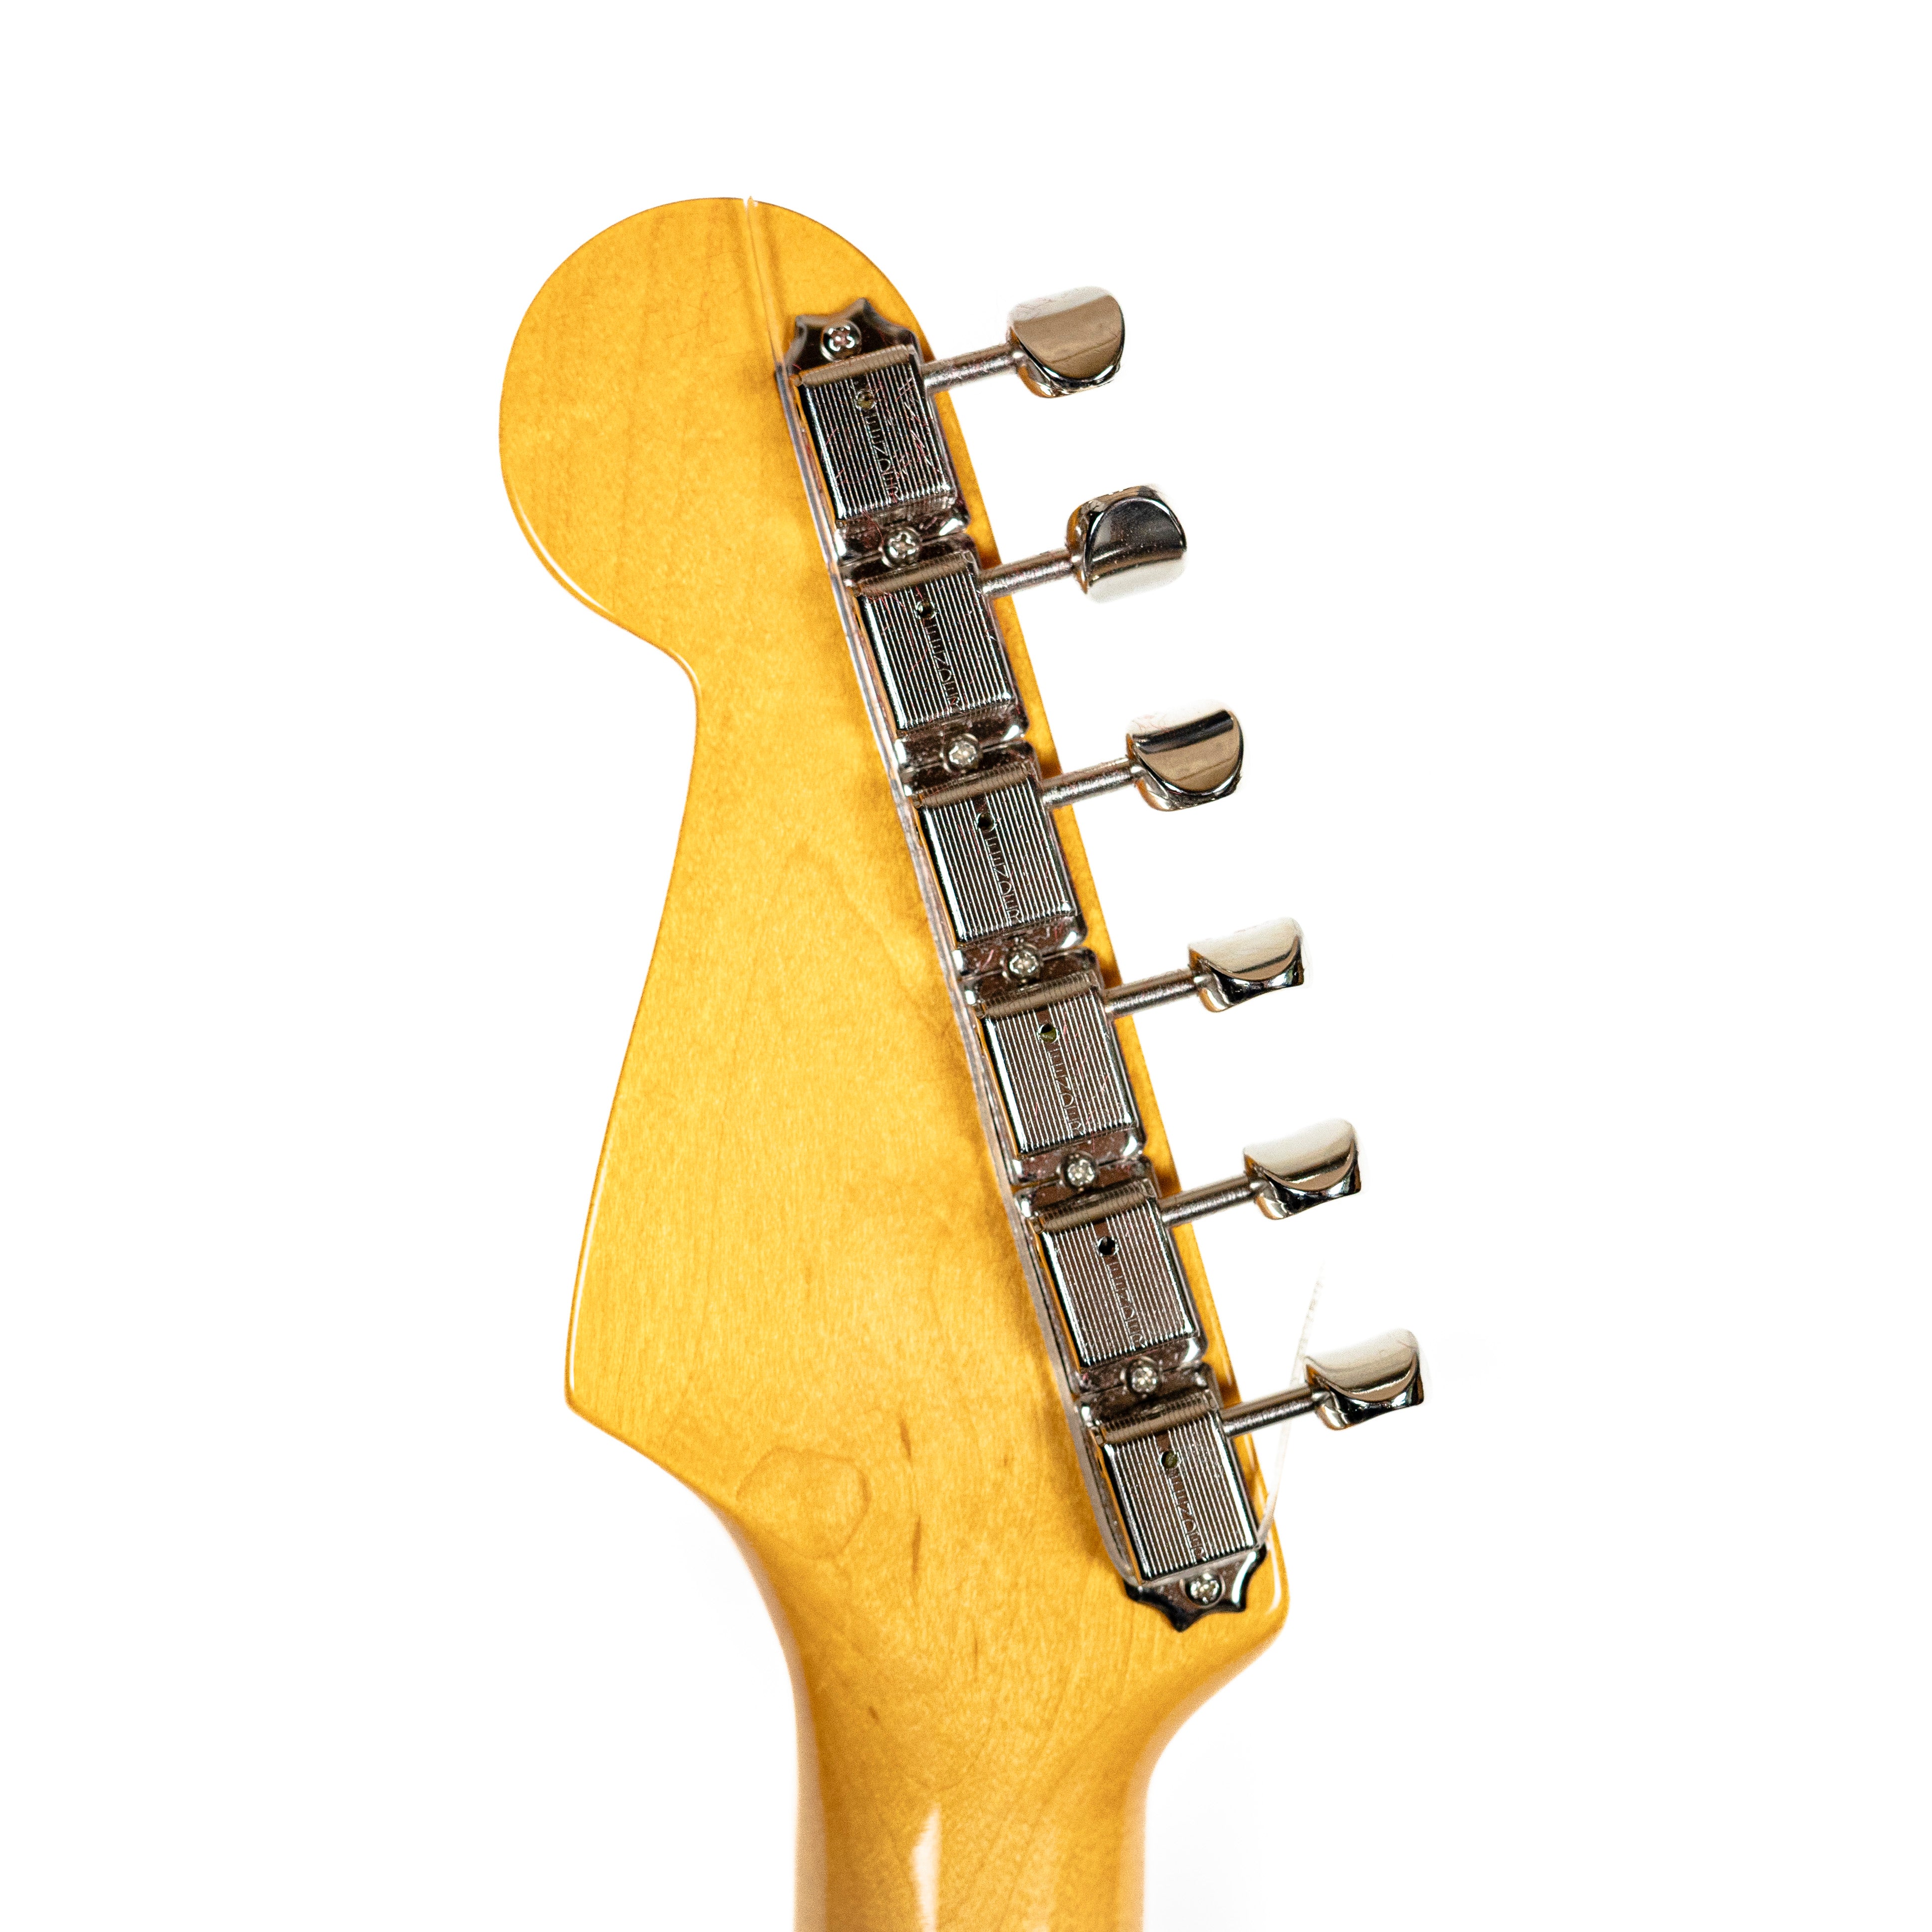 Fender American Vintage II '57 Strat 2 Tone Sunburst